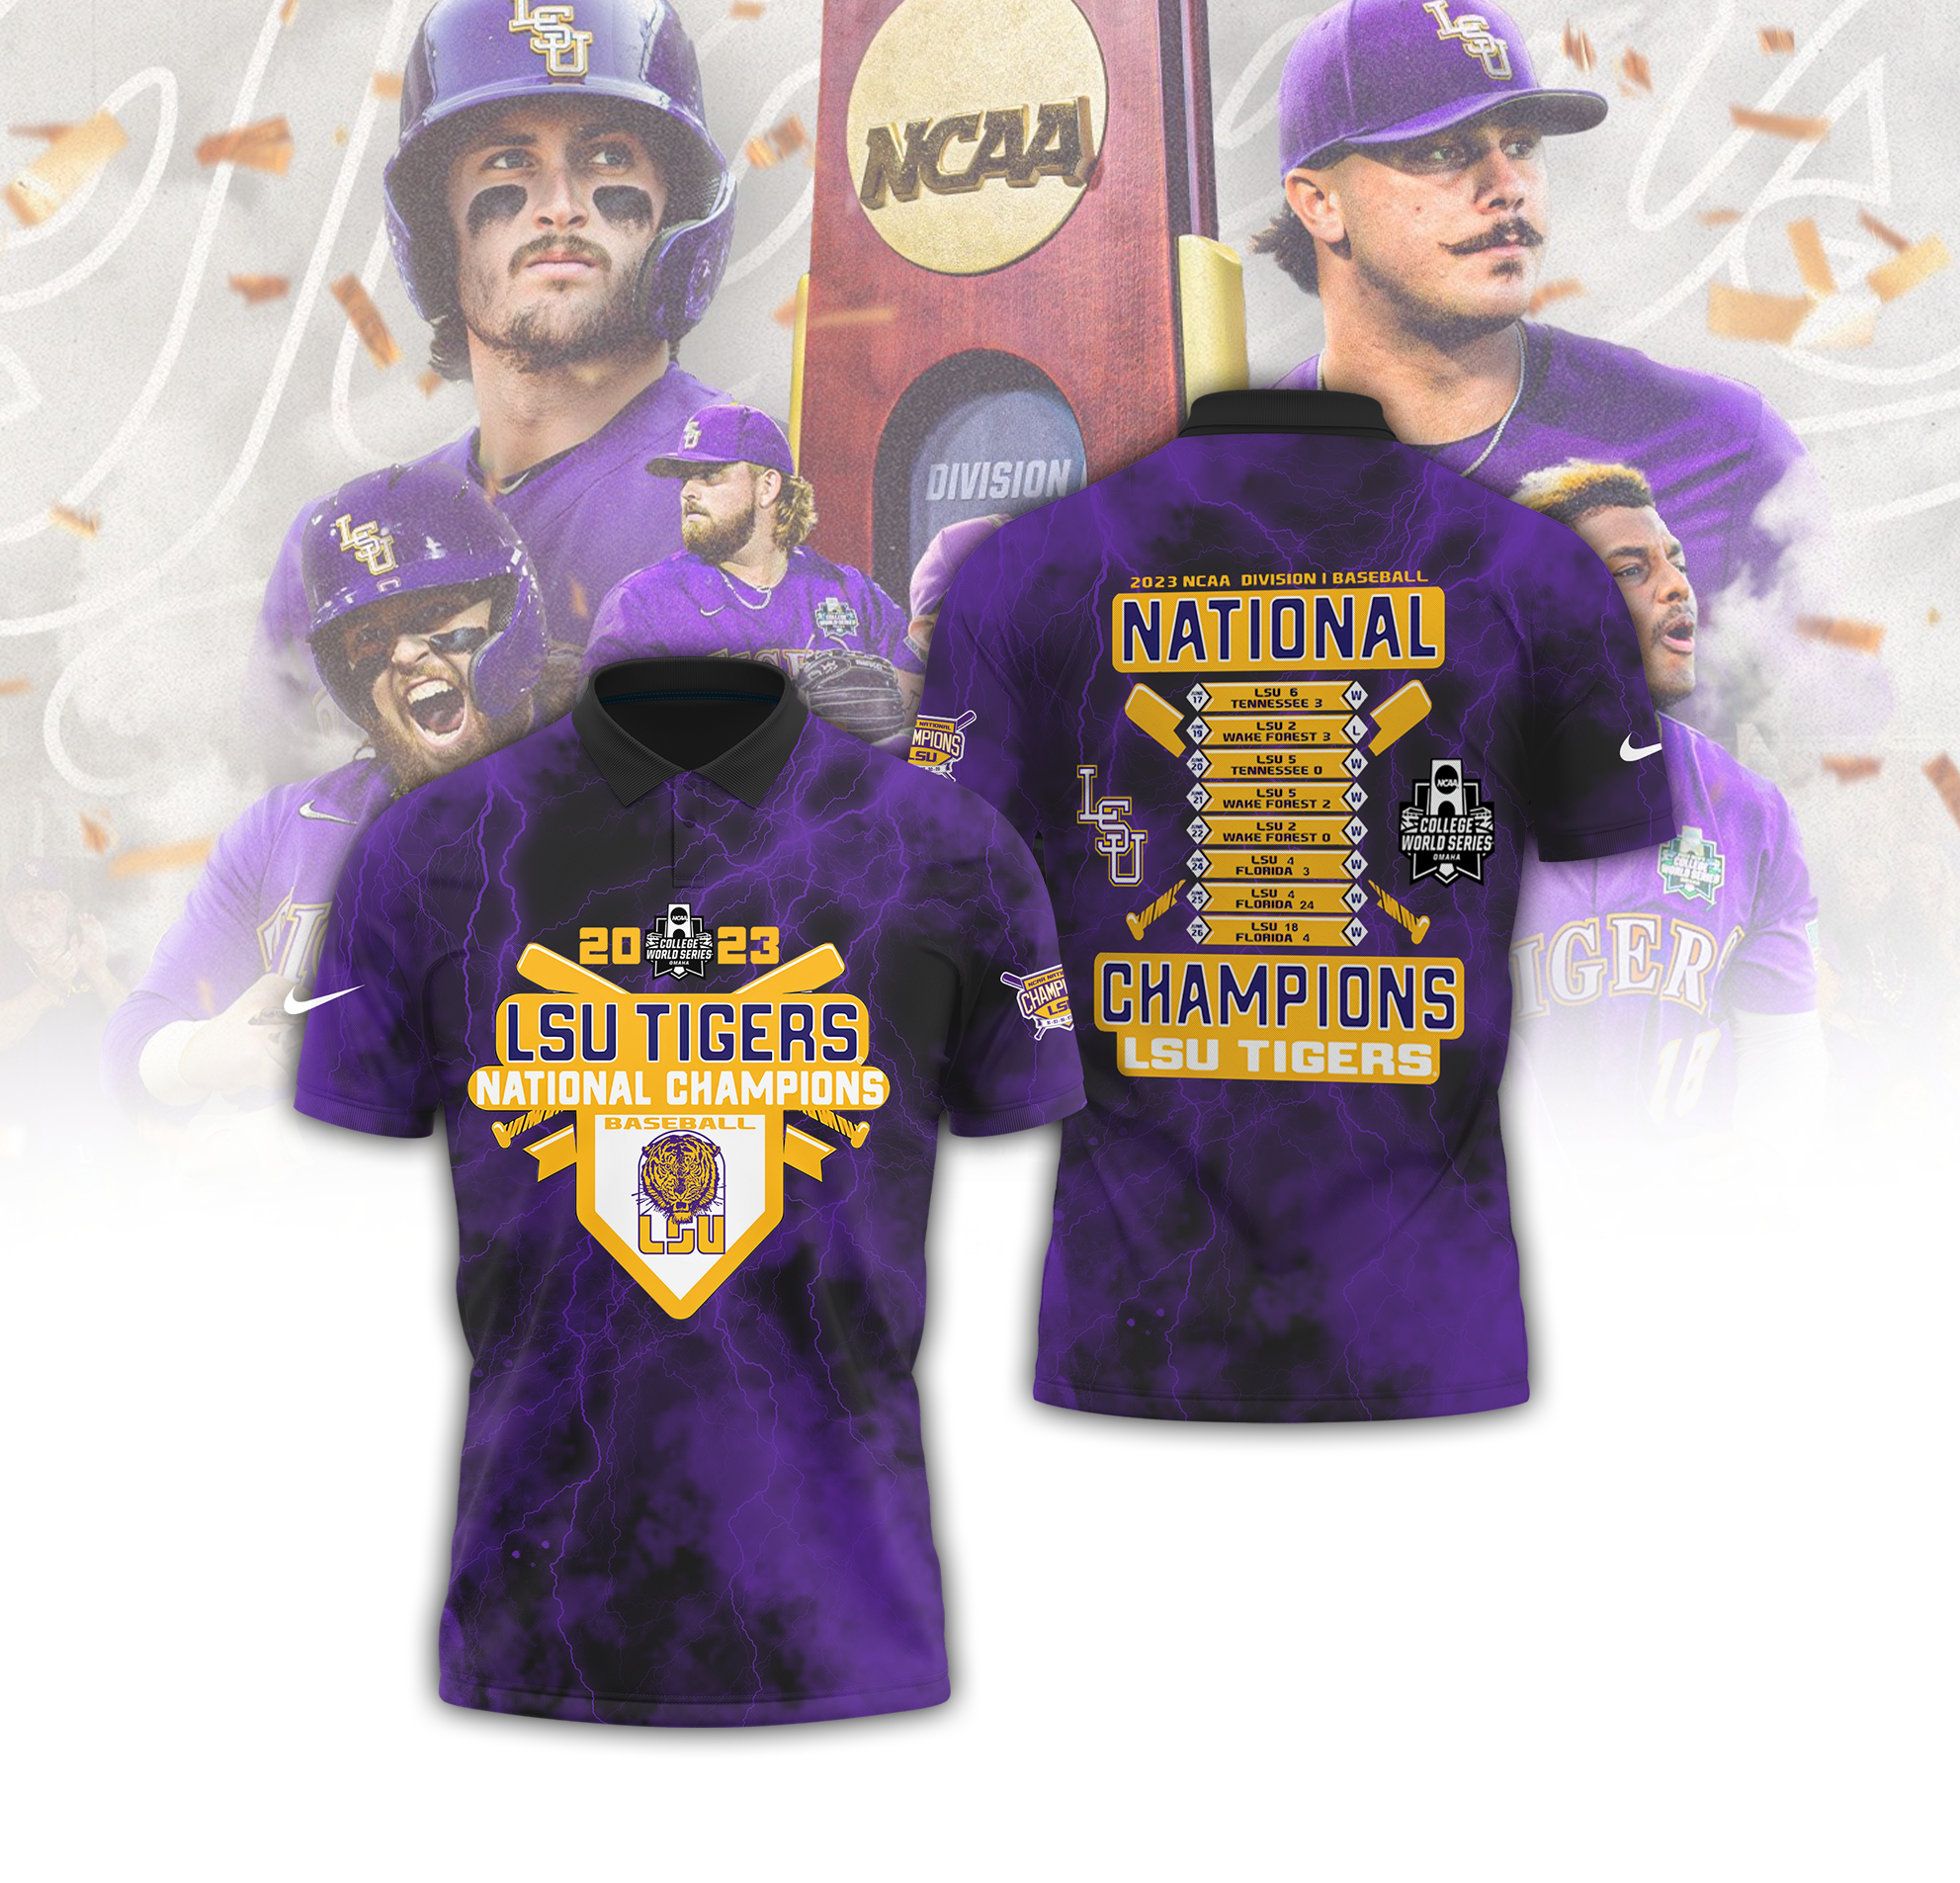 LSU Baseball Gear, LSU Tigers Baseball Jerseys, Hats, T-Shirts